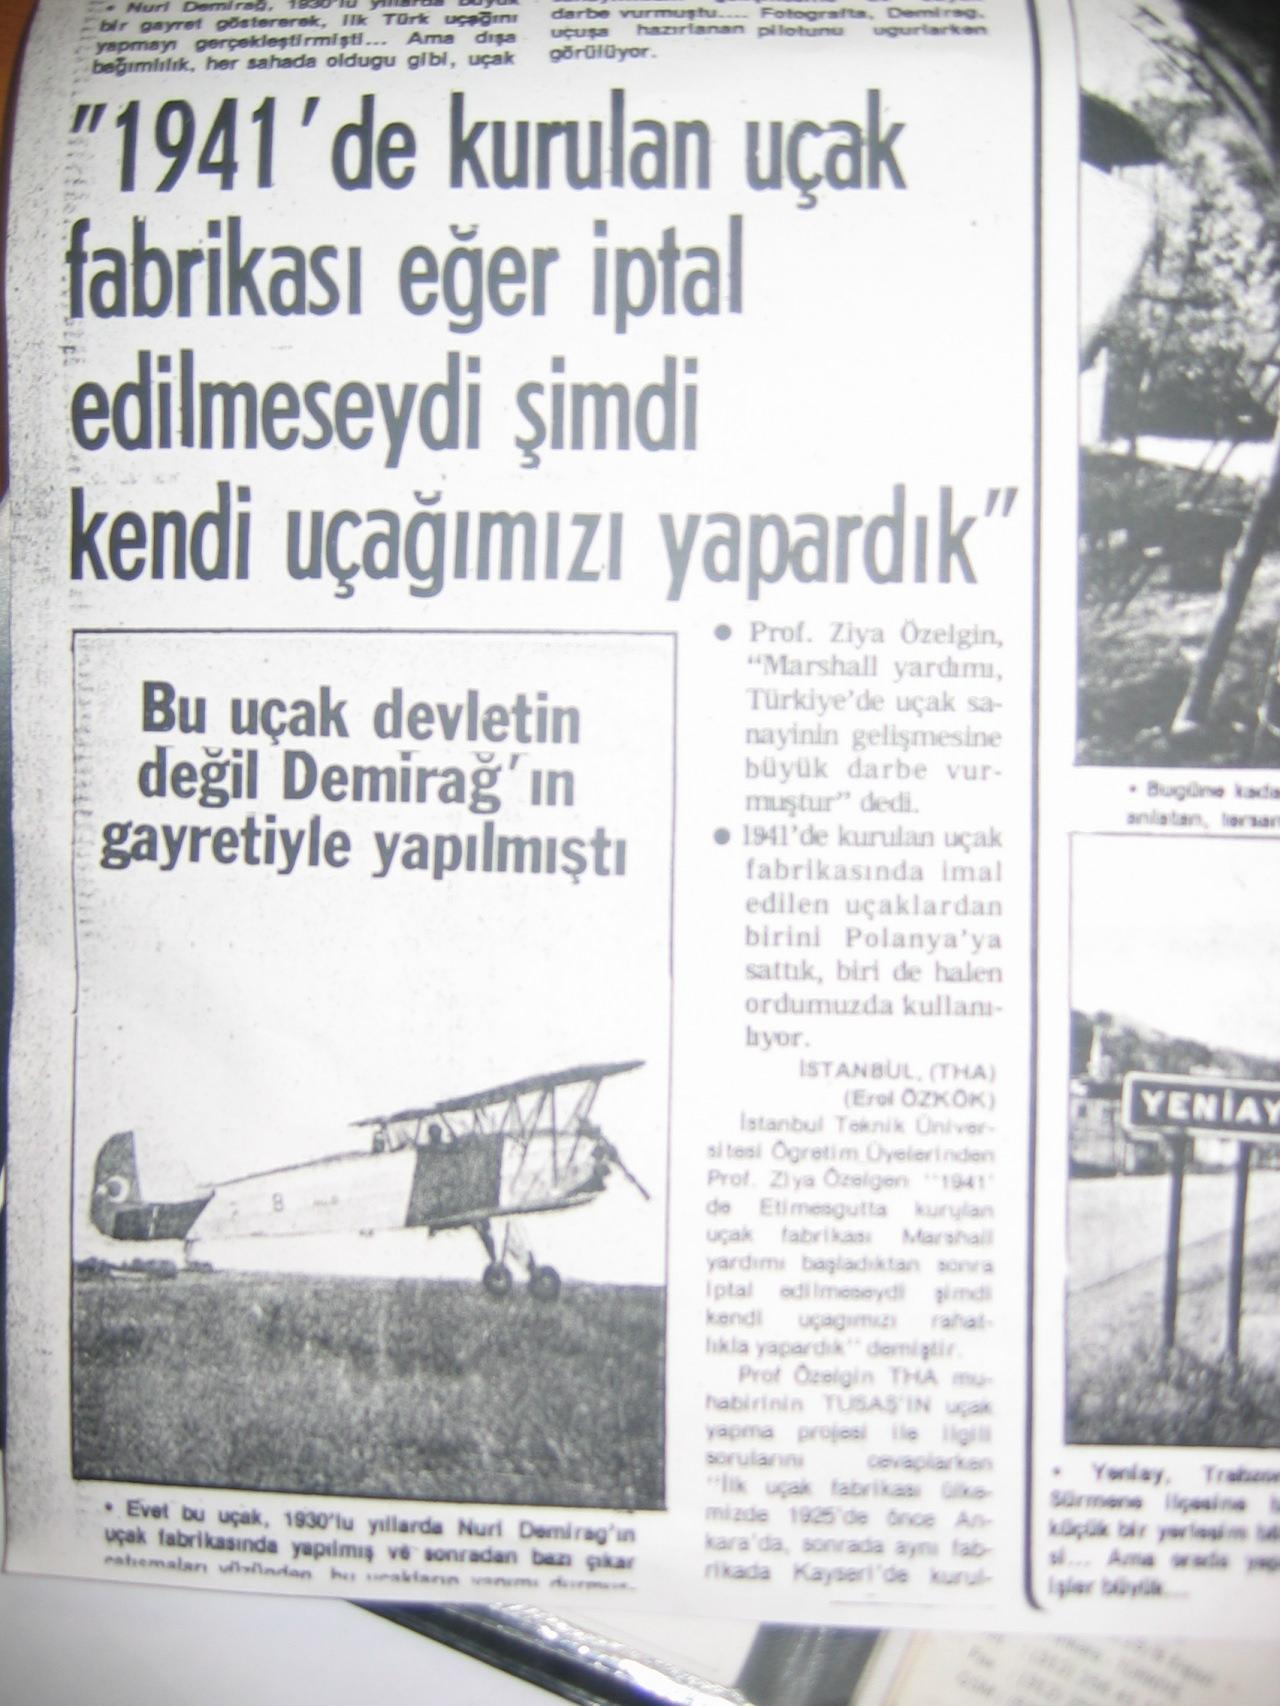 Milli Gazete'nin 11 Aralık 1981 tarihli sayısından